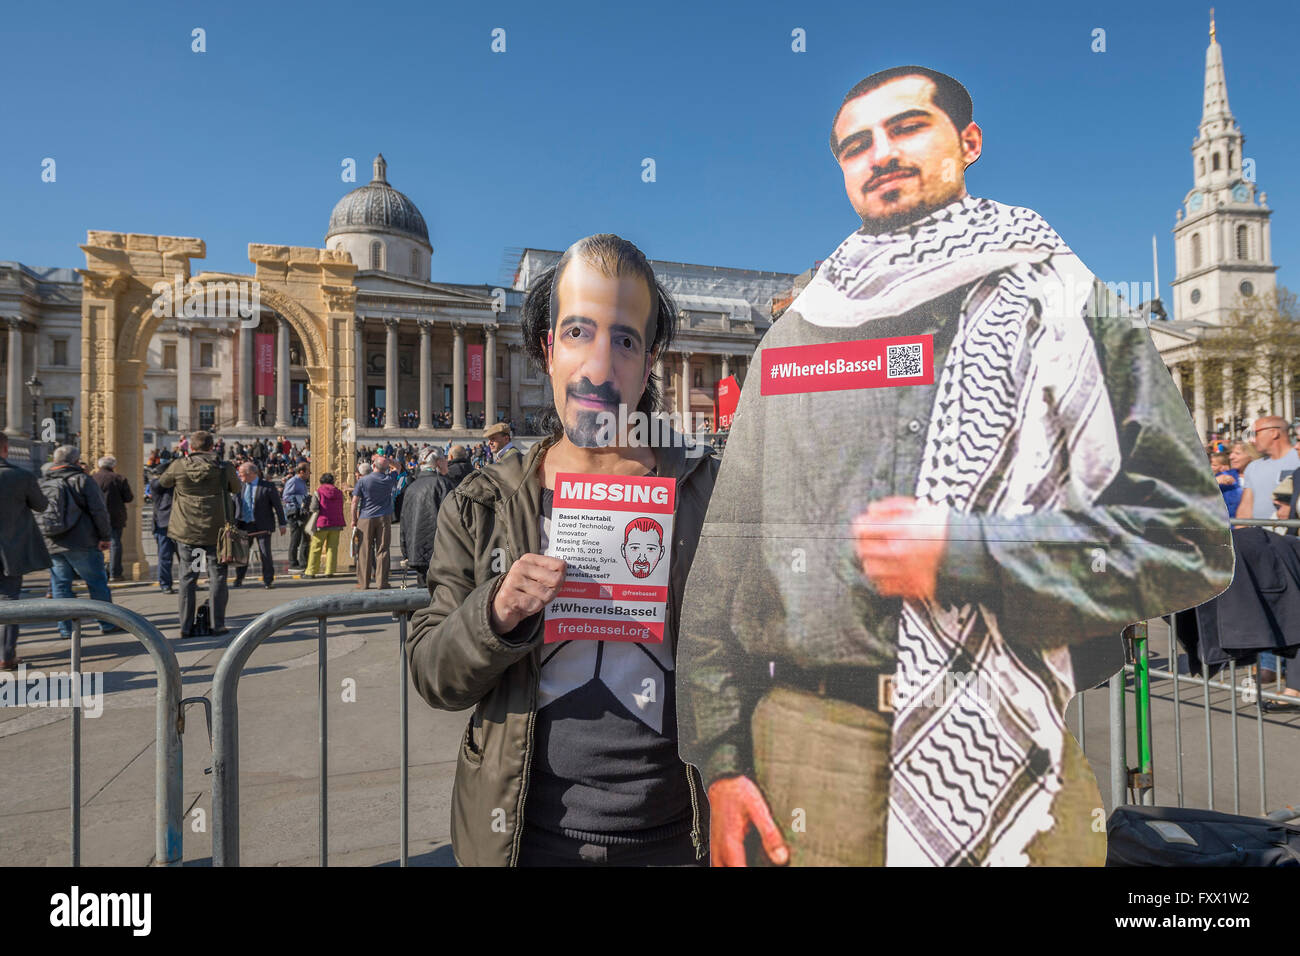 Londres, Reino Unido. 19 de abril de 2016. Partidario de la libre Bassel campaña - Bassel fue uno de los primeros fotógrafos para el proyecto de preservación y ha desaparecido desde el 15 de marzo de 20112 (véase @freebassel o freebasselorg) . Arco de Triunfo - una réplica de un monumento de Siria, dos milenios viejo y destruido por el llamado Estado Islámico en Siria, ha sido erigido en la londinense Trafalgar Square. El modelo a escala del Arco de Triunfo ha sido hecha de mármol de Egipto por el Instituto de Arqueología Digital (IDA) utilizando la tecnología 3D a partir de fotografías del arco original. Crédito: Guy Bell/Alamy Liv Foto de stock